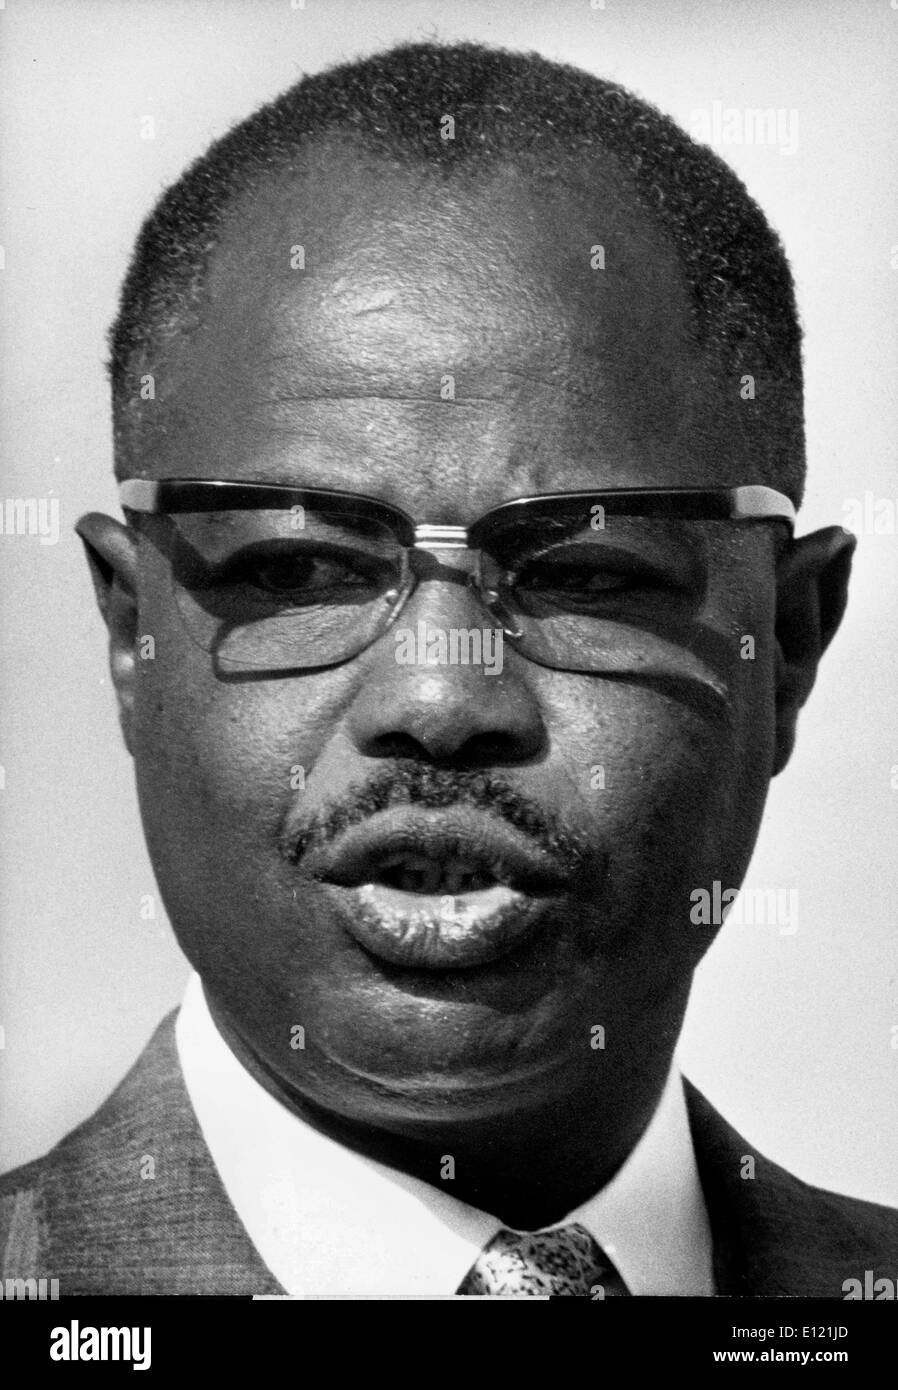 Nov 07, 1981 ; Yaoundé, Cameroun ; AHMADOU BABATOURA AHIDJO le 24 août 1924 Le 30 novembre 1989 était le président du Cameroun de 1960 à 1982, lorsque le Cameroun a obtenu son indépendance en 1960. Il a été réélu en 1965, 1970, 1975 et 1980. Il a eu une rébellion dans les années 1960. Au début des années 1970, il a créé une constitution impopulaire qui a mis fin à l'autonomie du Cameroun britannique et mis en règle unitaire. Bien que plusieurs de ses actions ont été dictatorial, son pays est devenu un des plus stables en Afrique. (Crédit Image : KEYSTONE/ZUMAPRESS.com) Photos USA Banque D'Images